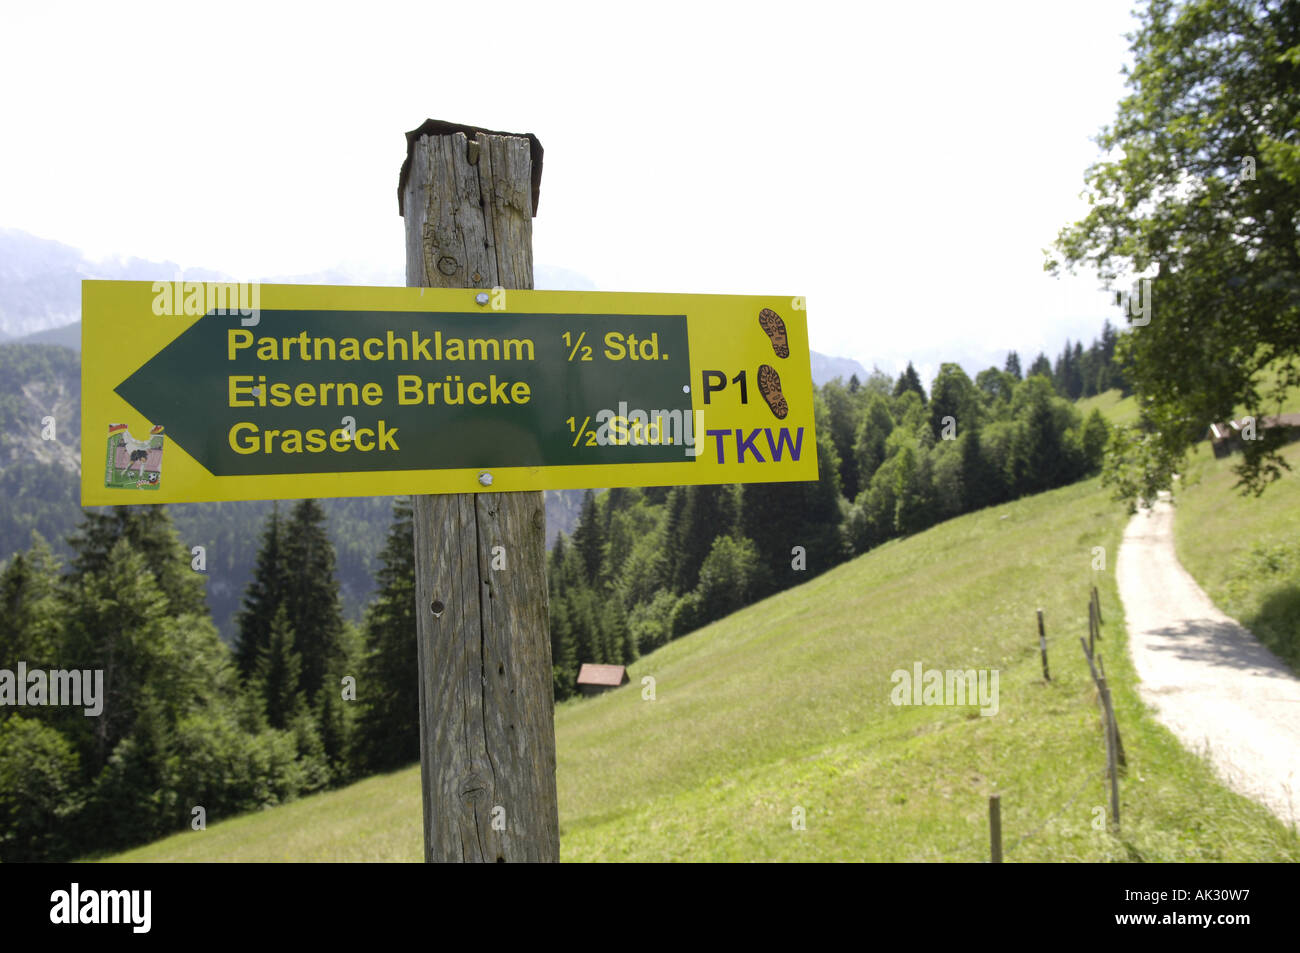 Weg Weg Feld grünen sonnigen Sommer Partnachklamm Eiserne Brücke Graseck Trail Zeichen Wegweiser grün gelb Natur natürlichen ländlichen Stockfoto